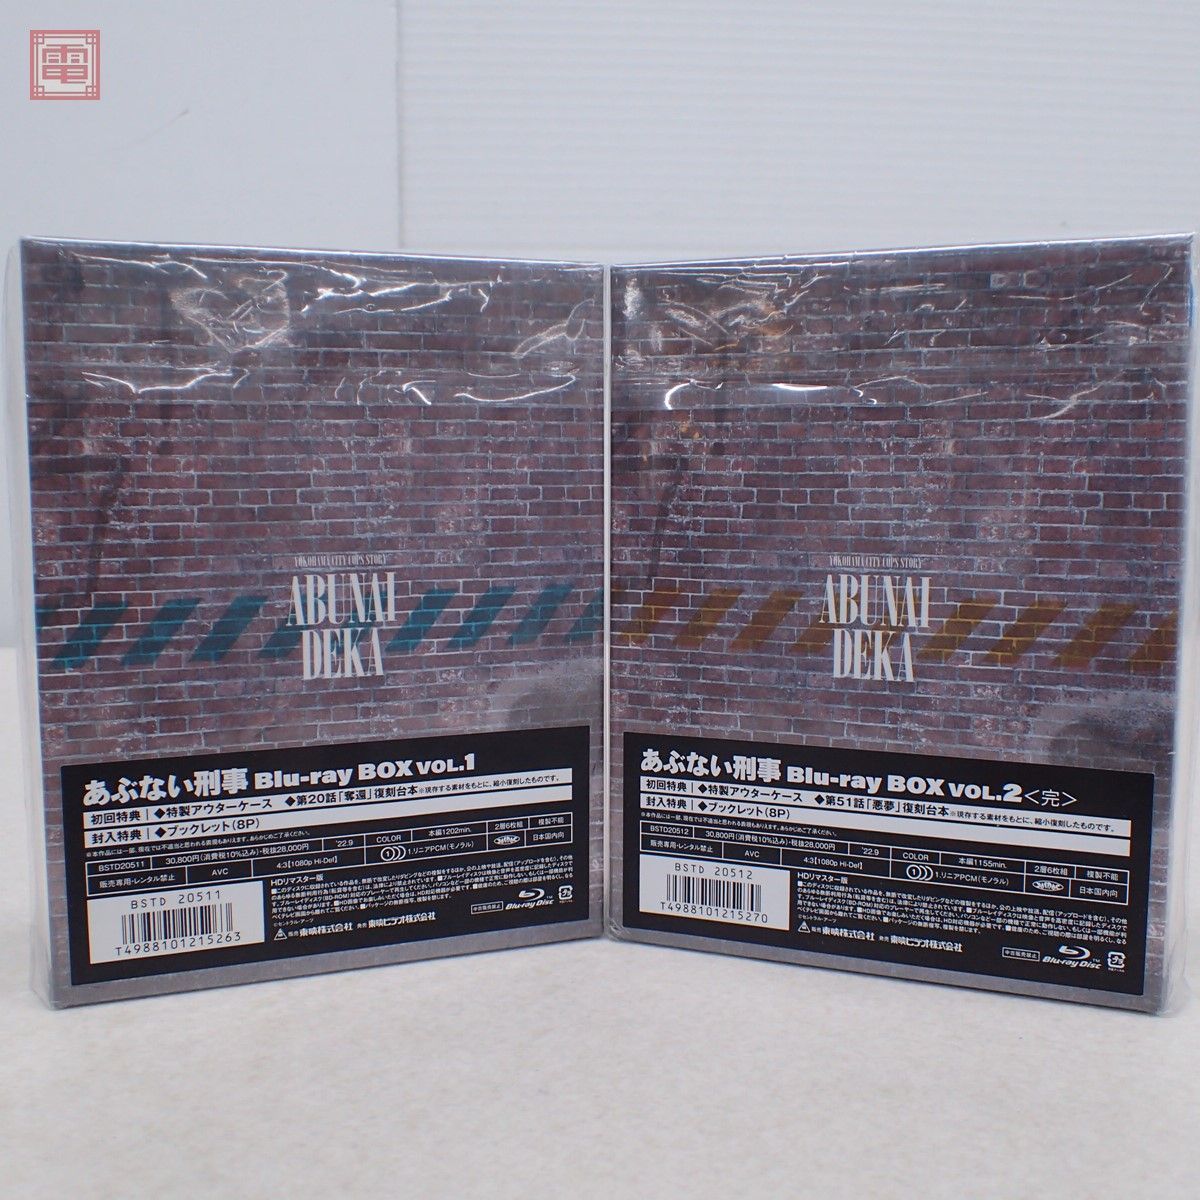 あぶない刑事 Blu-ray BOX Vol.1+Vol.2 2本セット 特典フィギュアなし